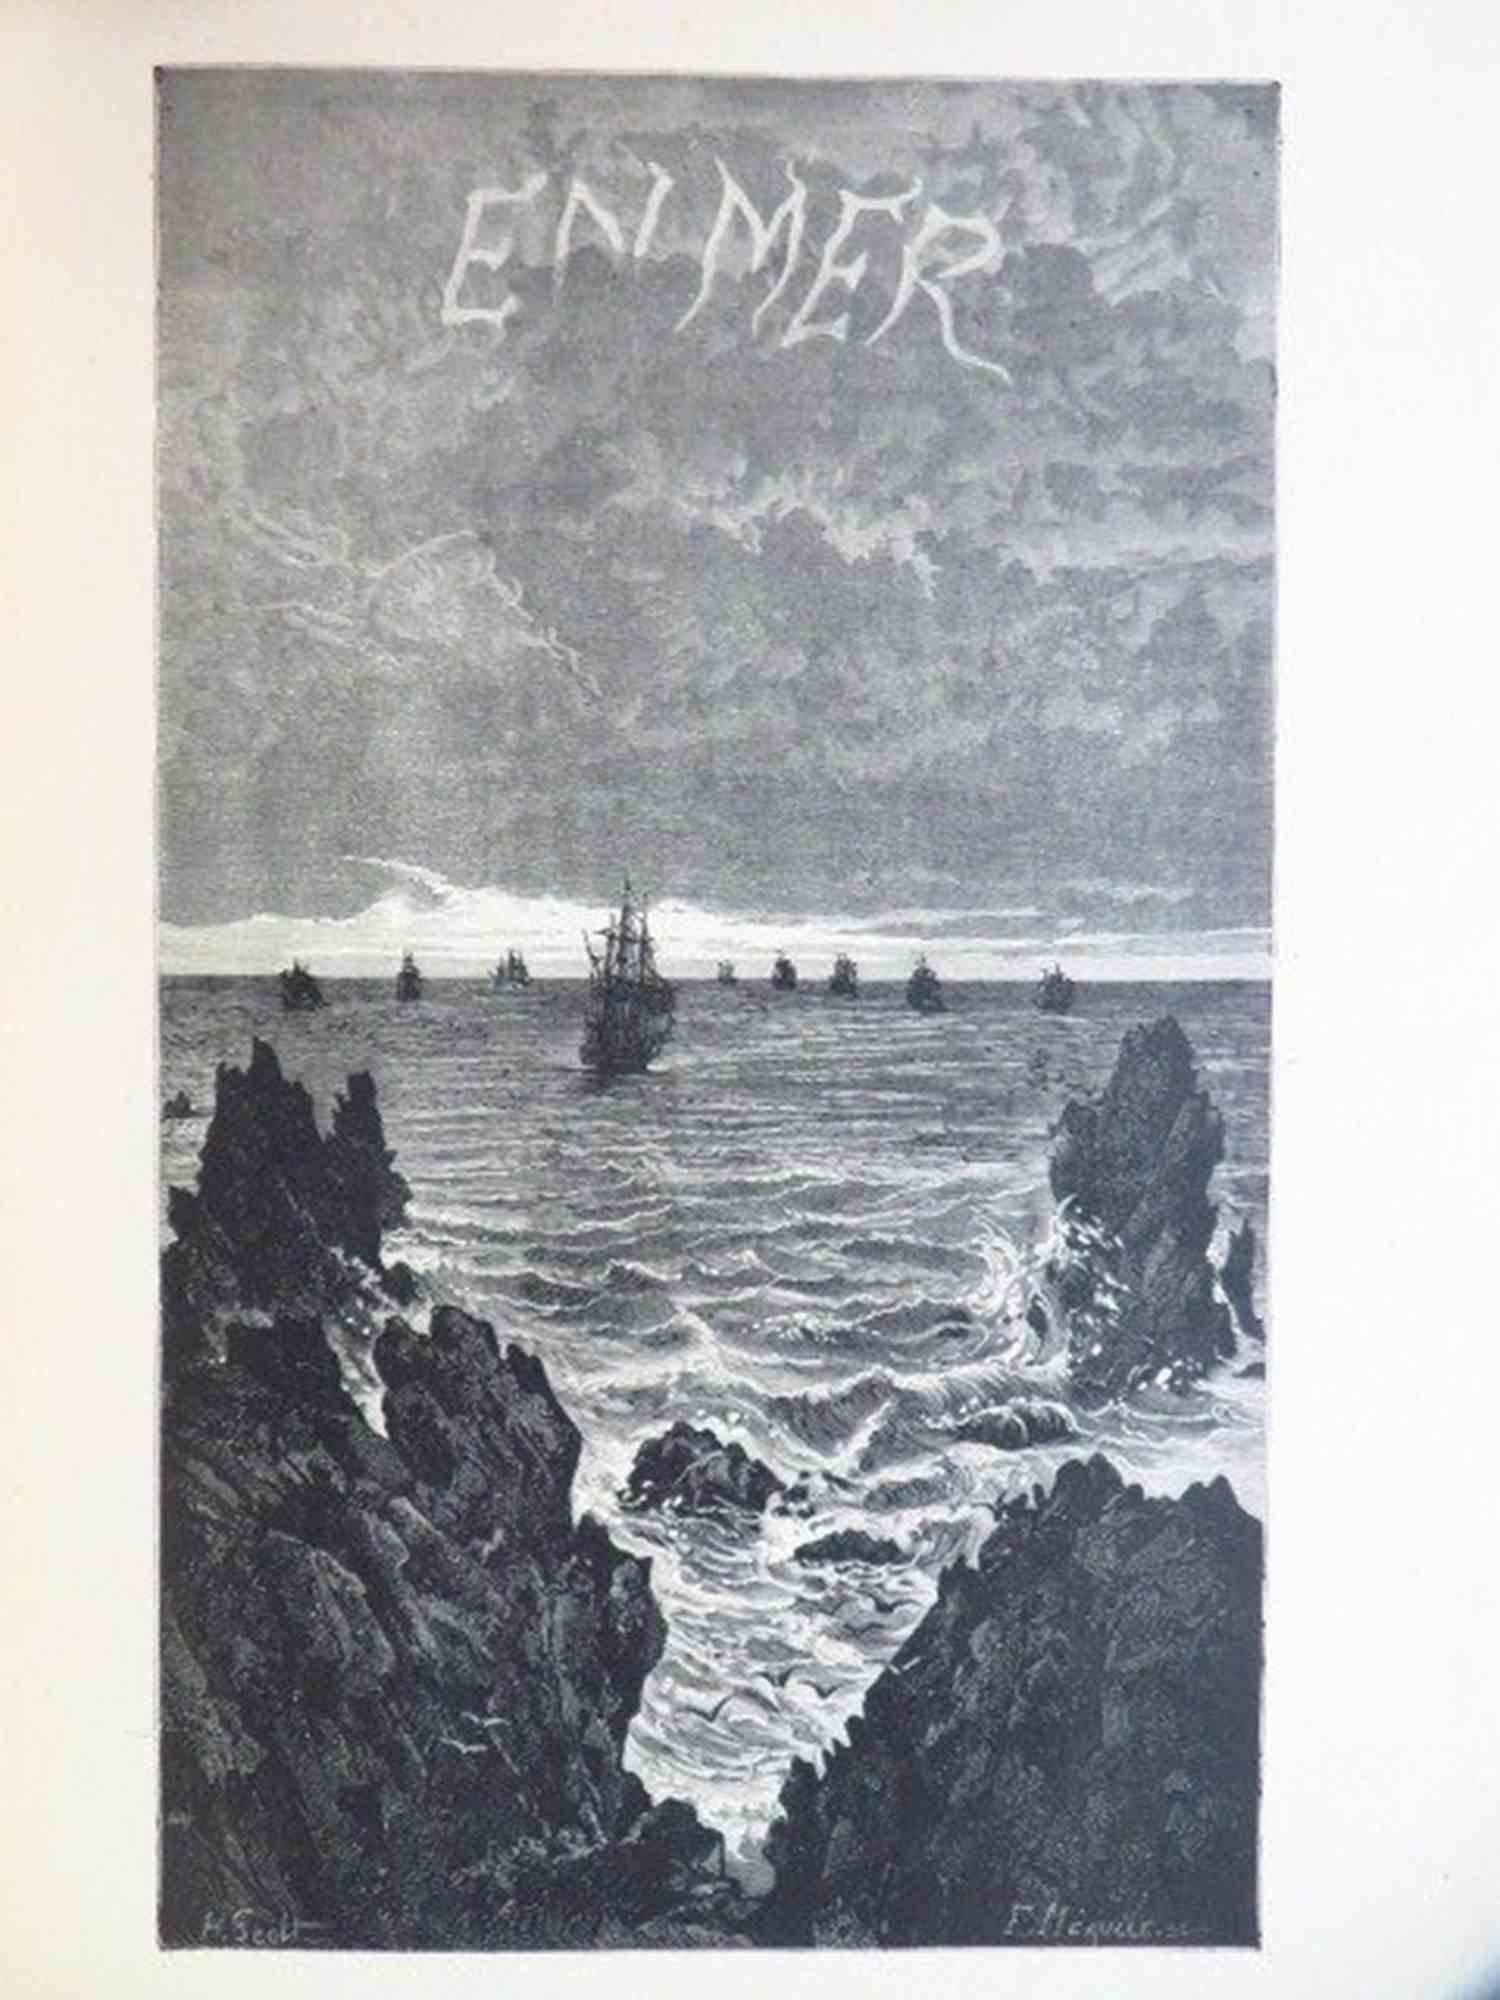 Quatrevingt - Treize - Rare Book by Victor Hugo - 1876 For Sale 8